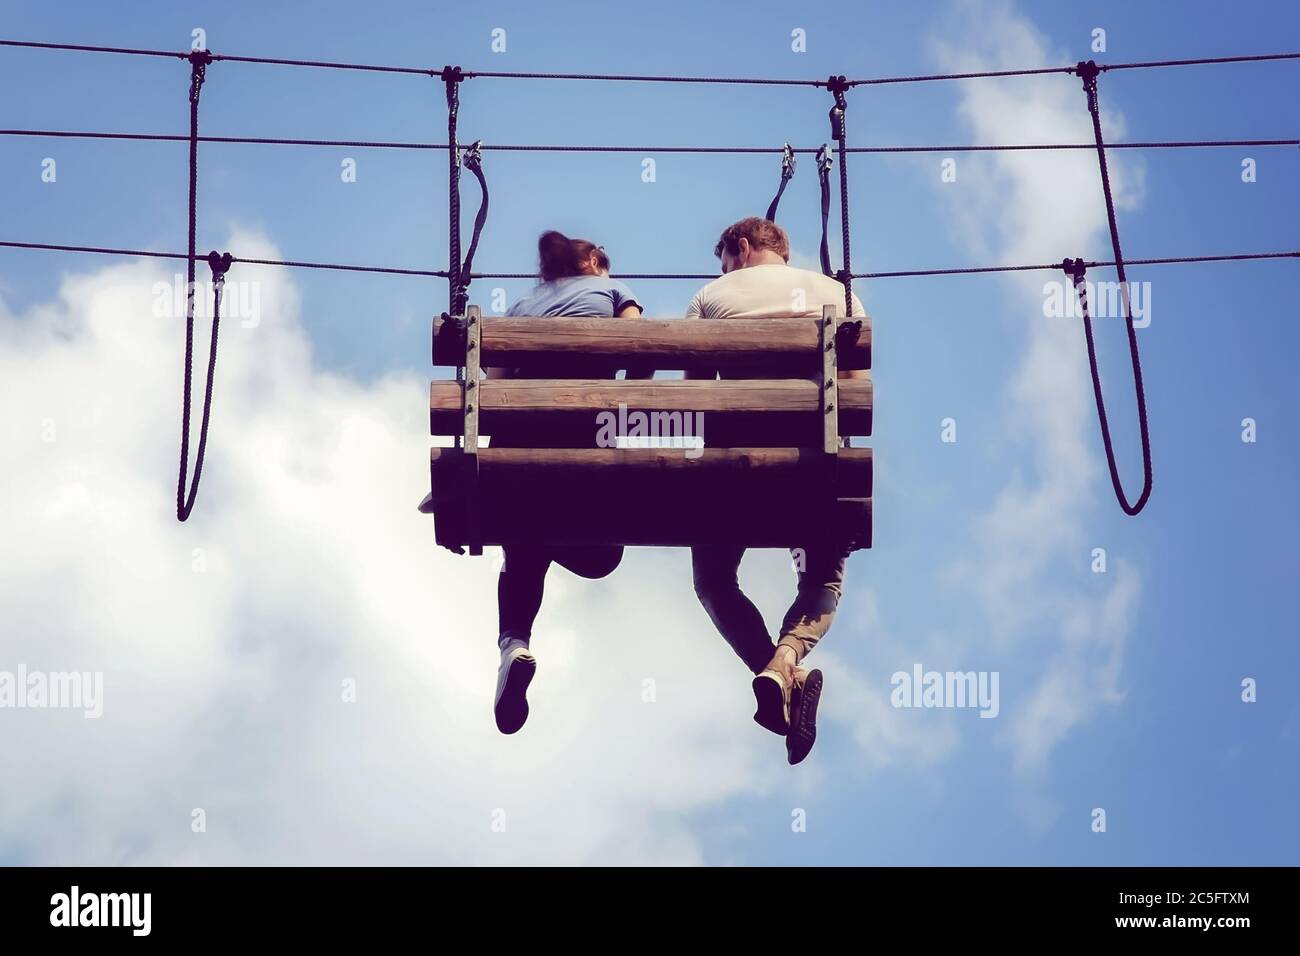 Moskau 10/07/2019 Junges Paar sitzen baumelnden Beinen auf einer hängenden Bank im Abenteuer Seilpark. Romantische Treffen am Himmel. Stockfoto